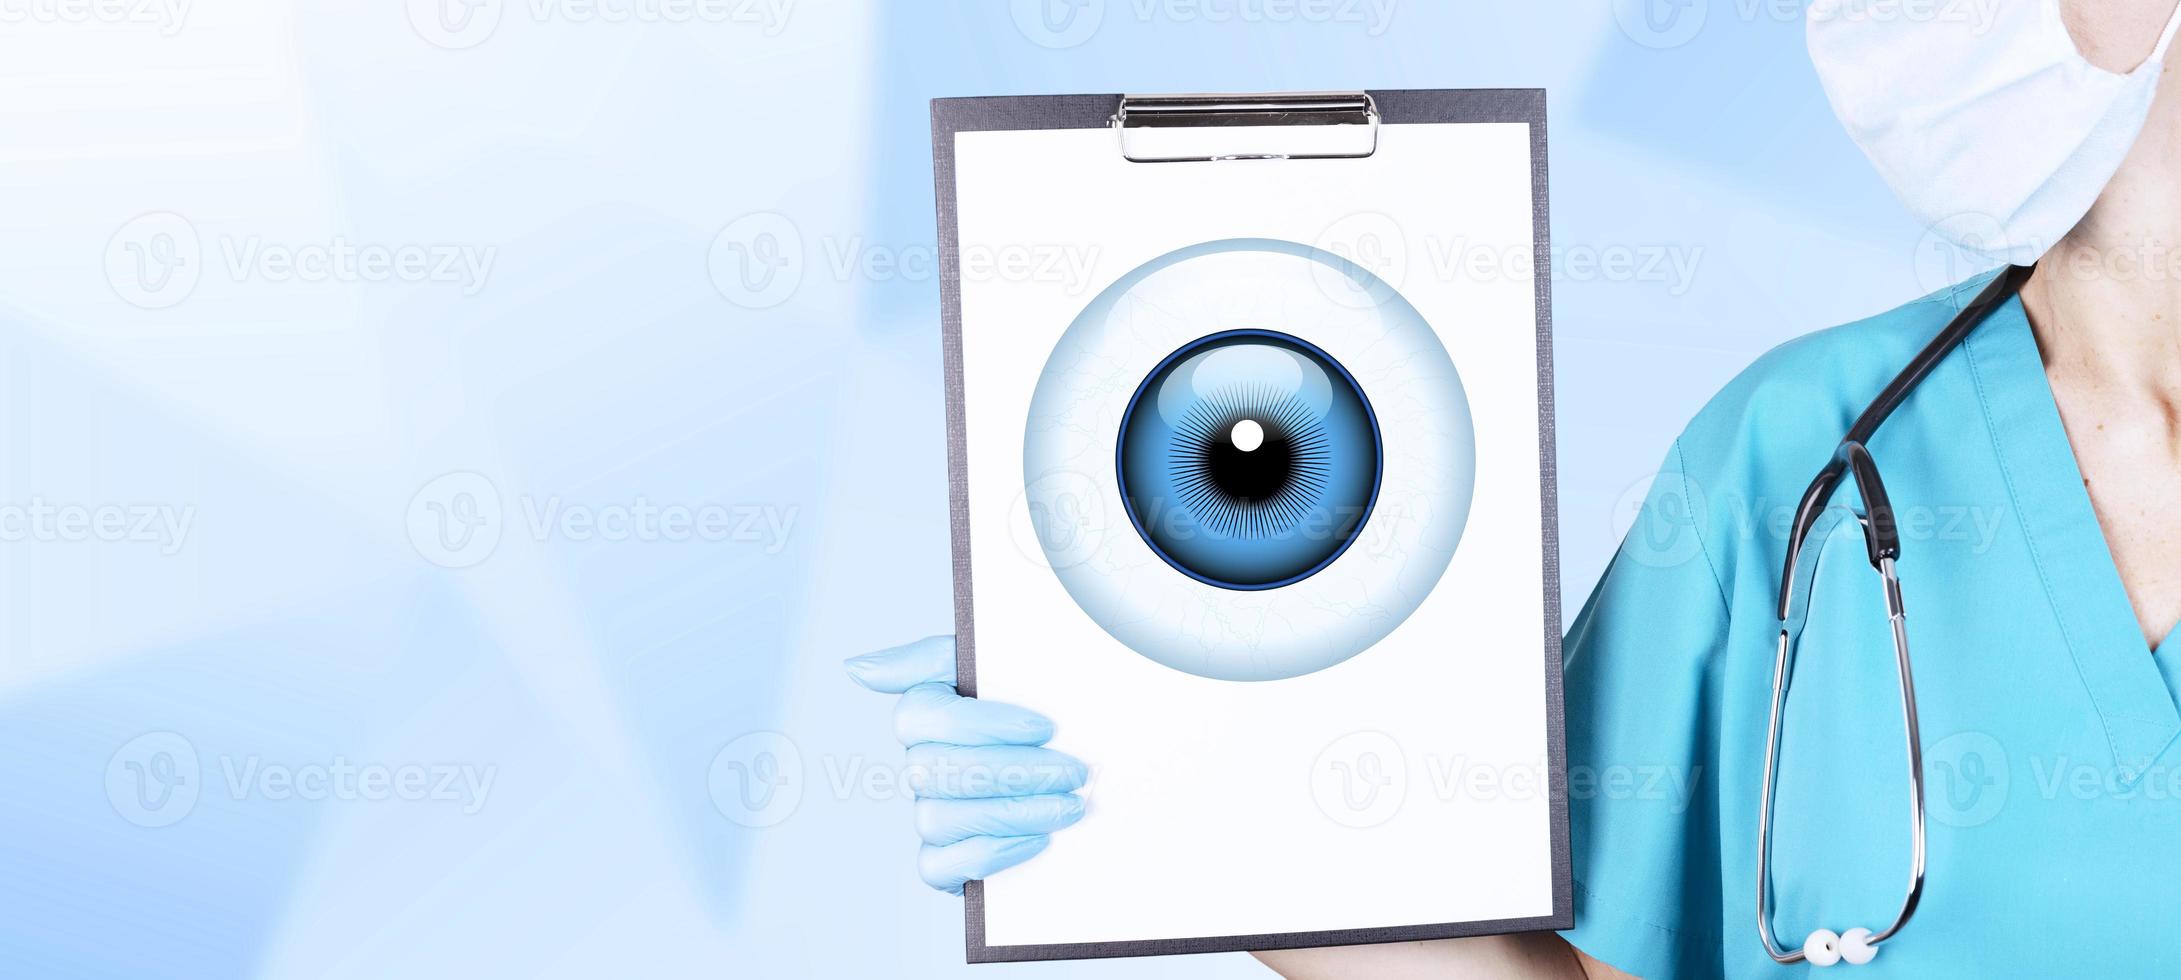 ojo humano realista con una córnea azul en forma de icono redondo en una tableta en manos de un médico, una mujer con ropa médica. fondo azul degradado. copie el espacio foto